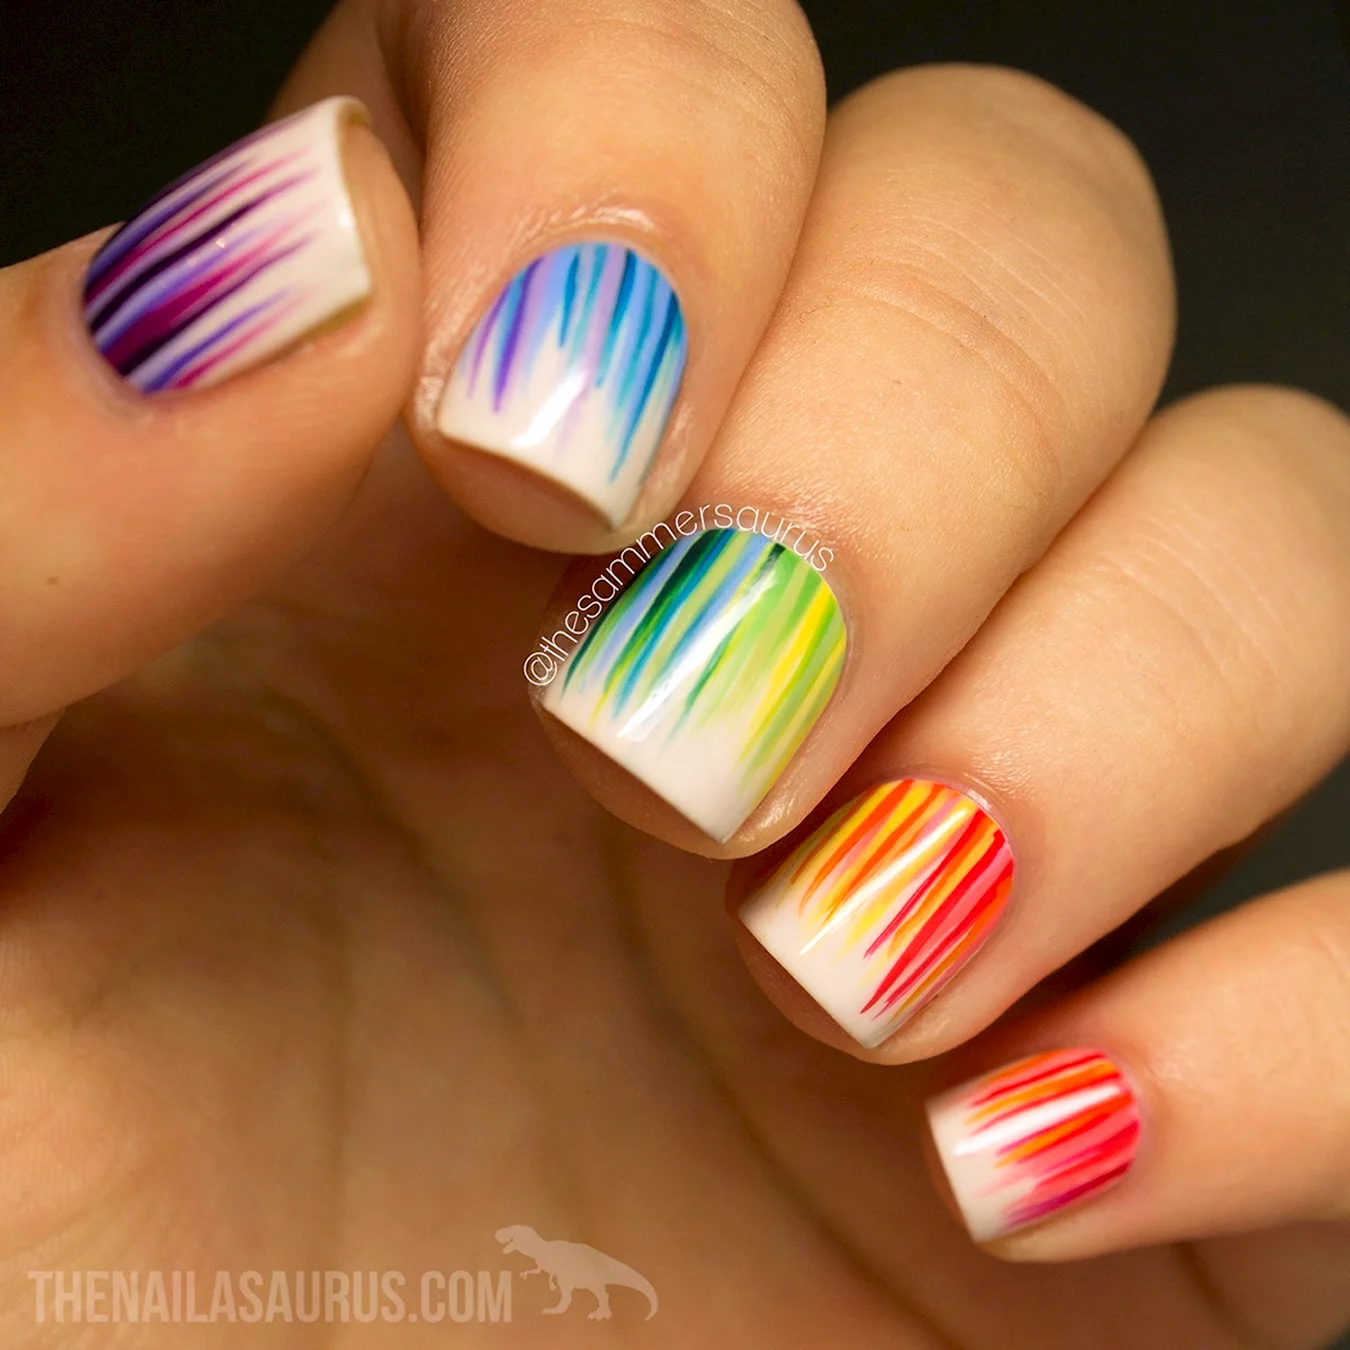 Ногти с разноцветными полосками